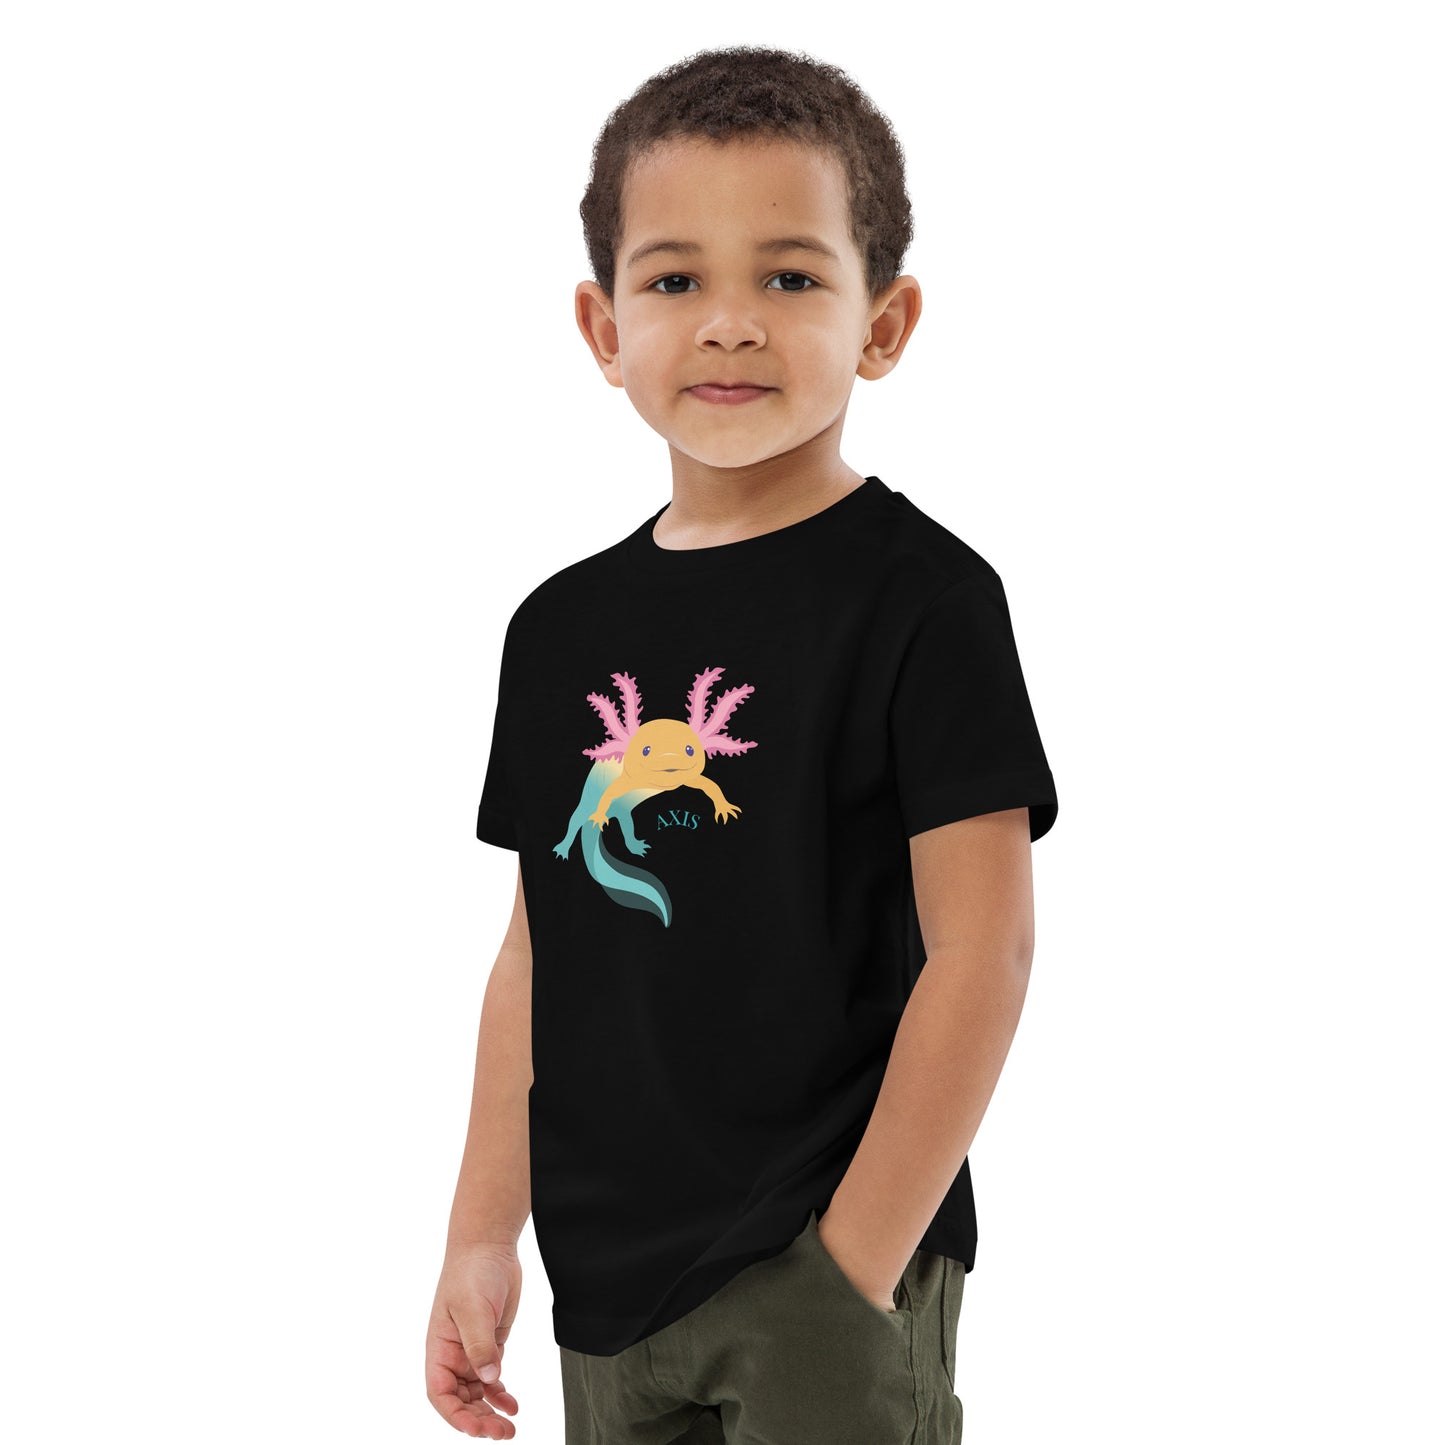 Barn T-shirt i färgen svart. Ekologisk bomull och tryck med axolotlen Axis.